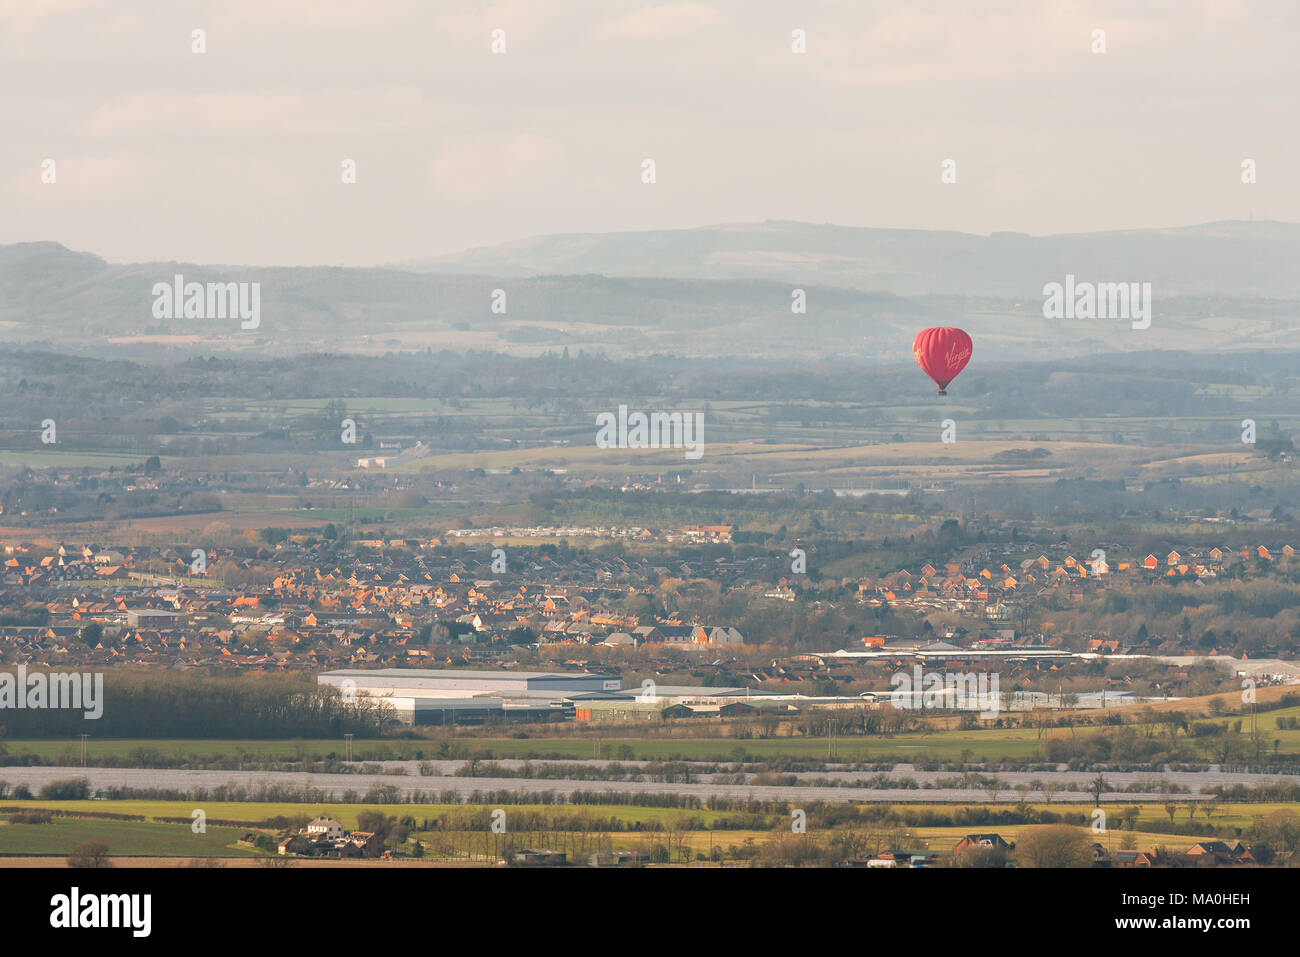 Un seul les red hot air ballon vole flottant au-dessus de maisons d'une petite ville de la campagne environnante. Banque D'Images